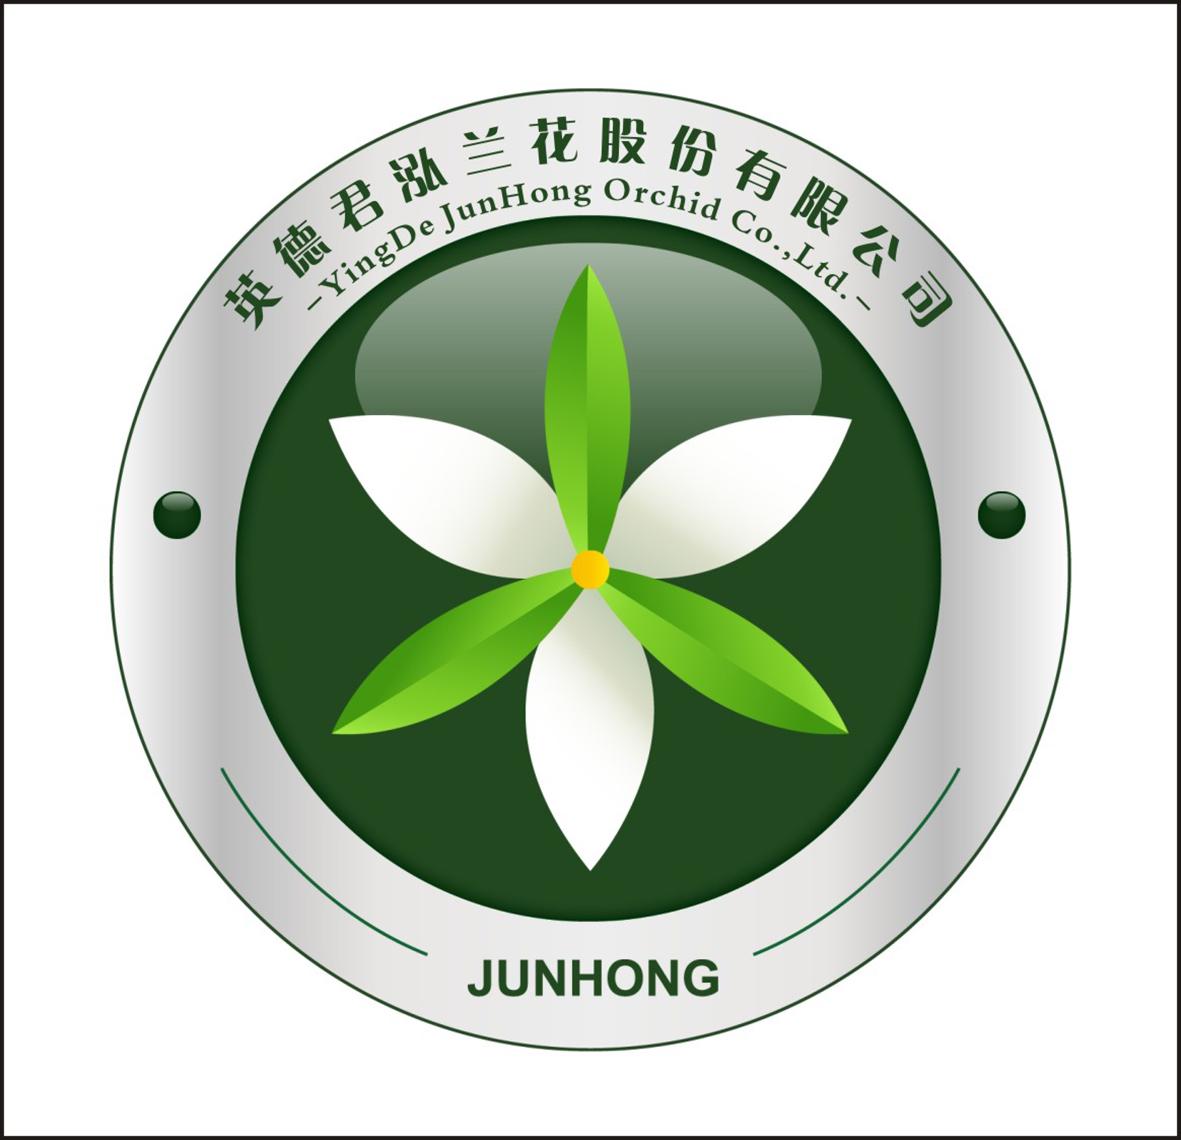 君子兰花图形logo标志图片